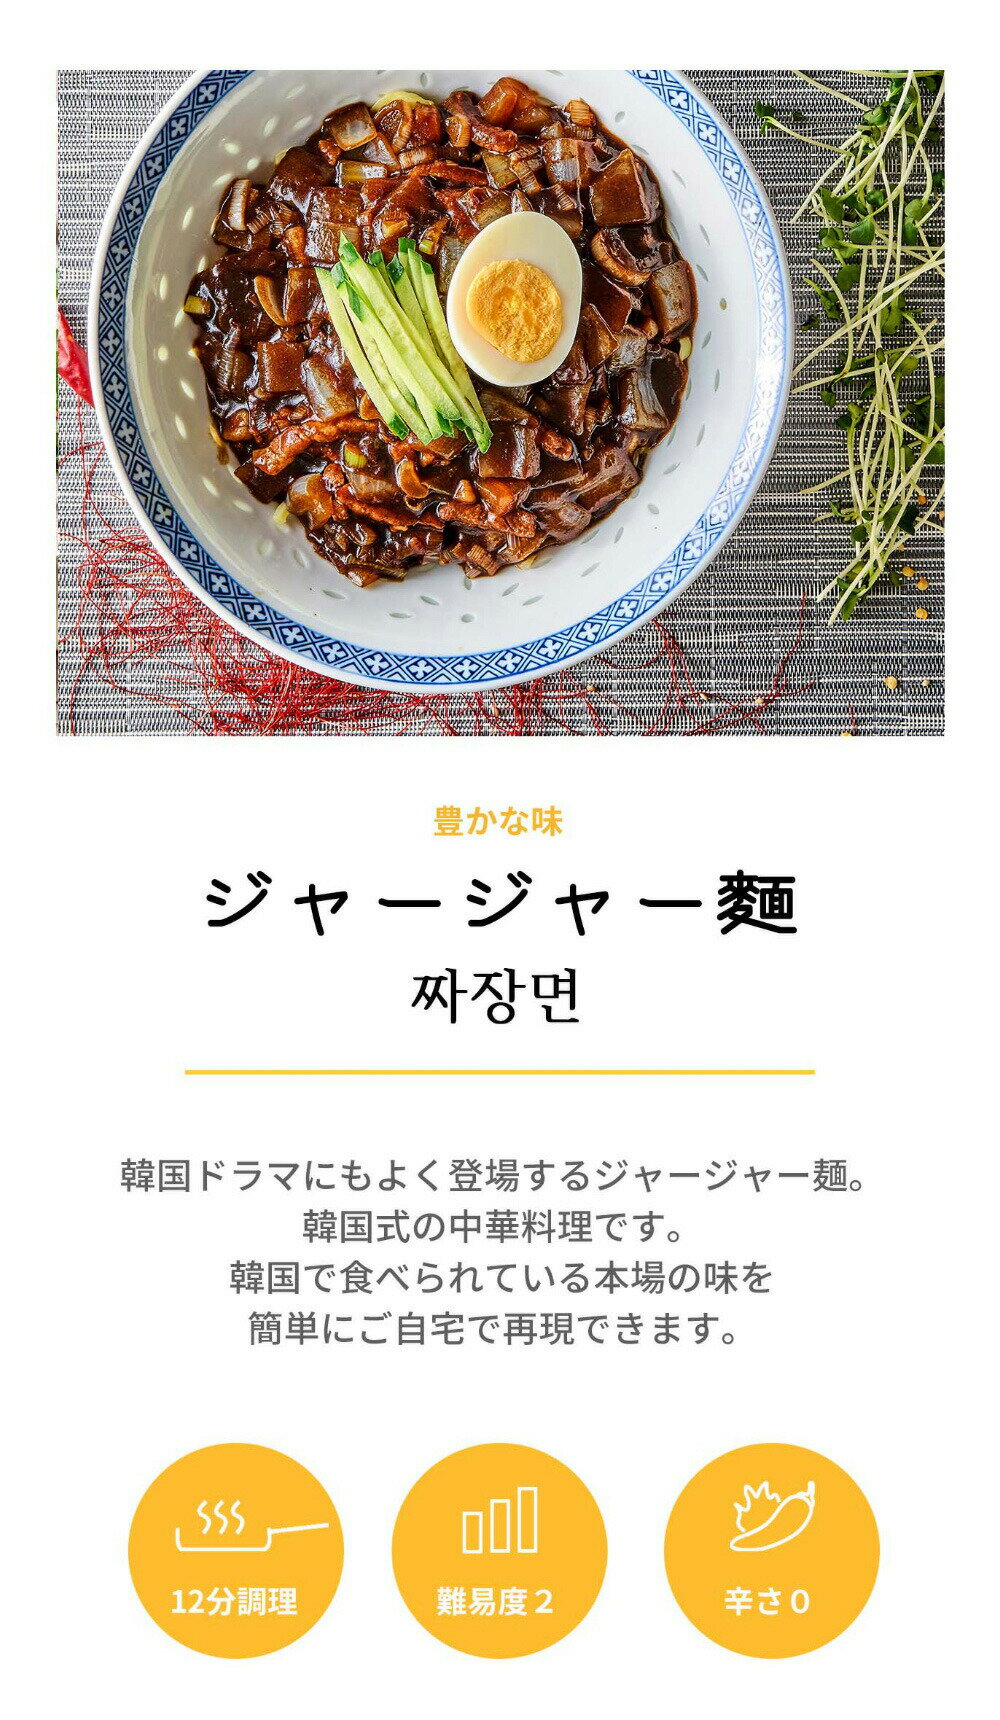 2人前 x 2個【クックイージー】チャジャン麺 ミールキット（710g x 2個）レシピ付き クール便 Cookeasy HACCPマーク取得済み 韓国食品 日本製造 自家 韓国料理 3